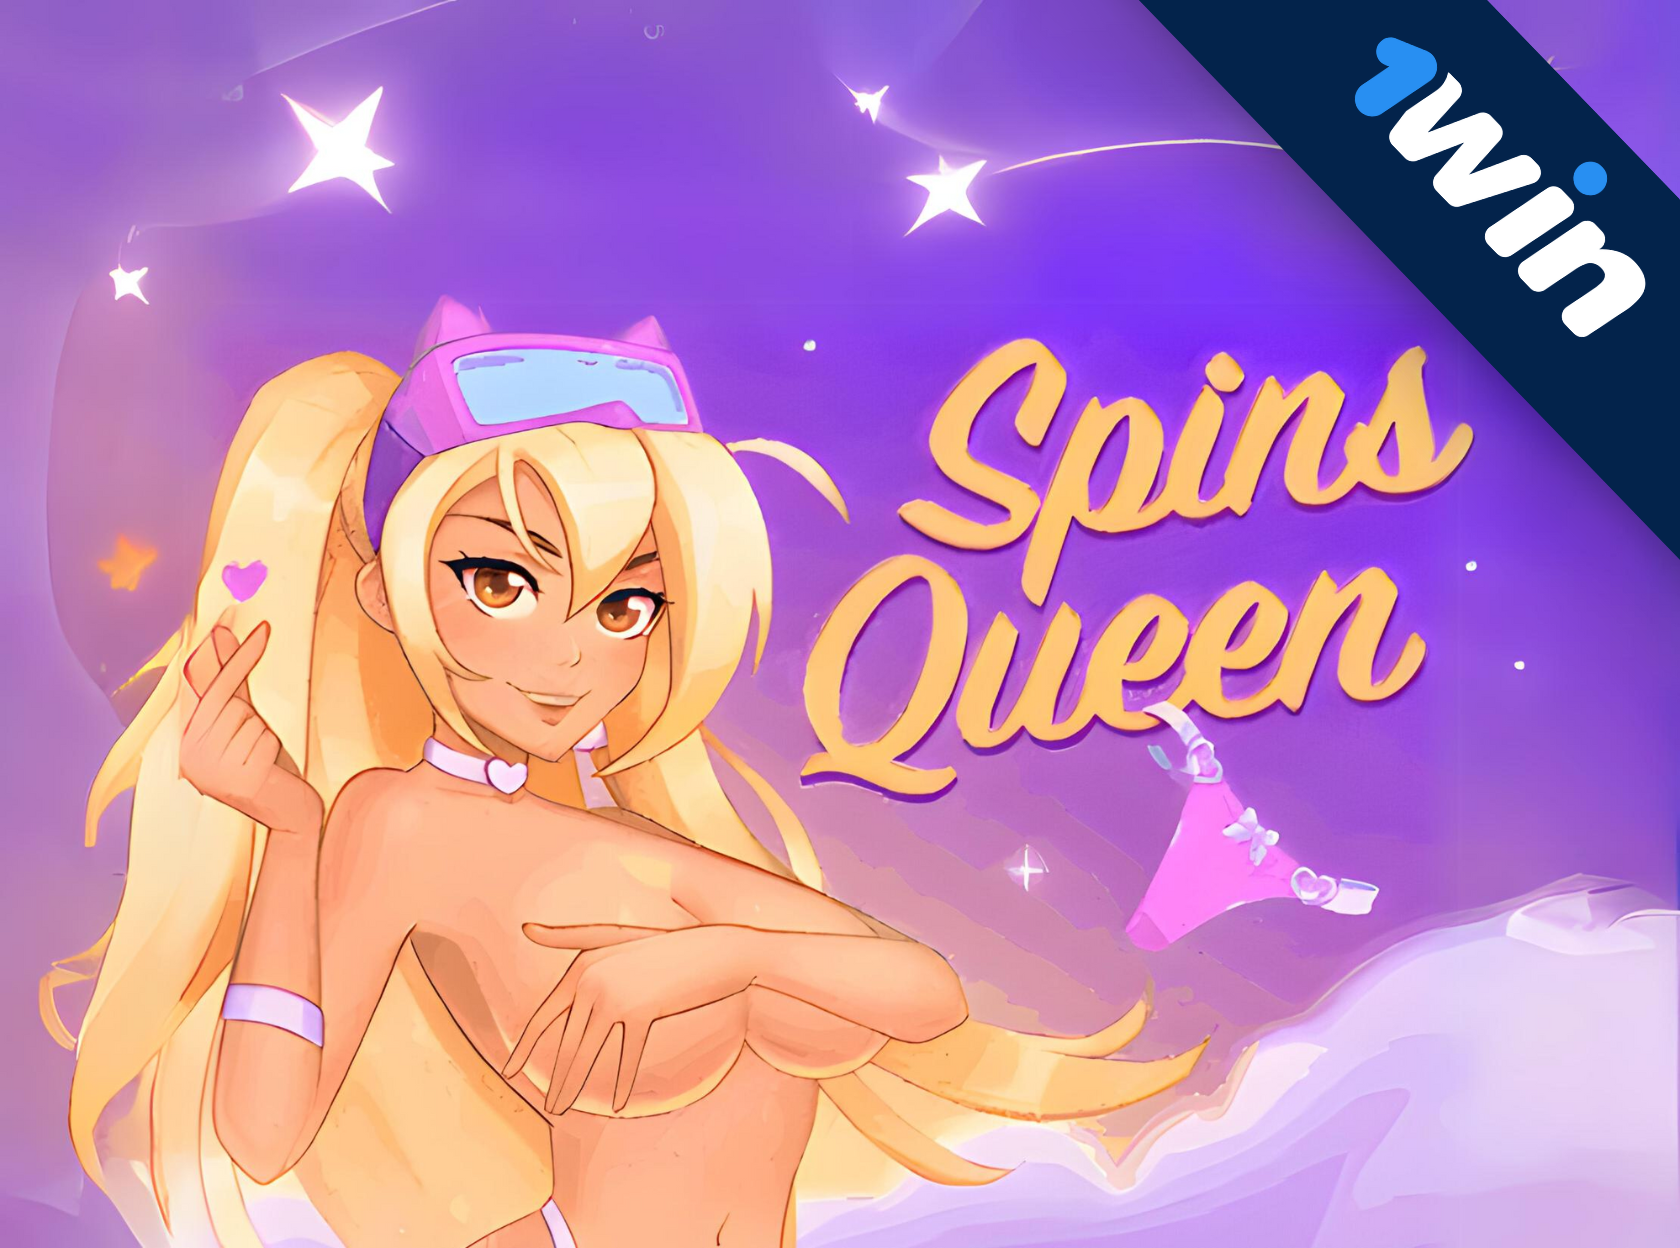 Spins Queen - 1windan yangi yangi mahsulot